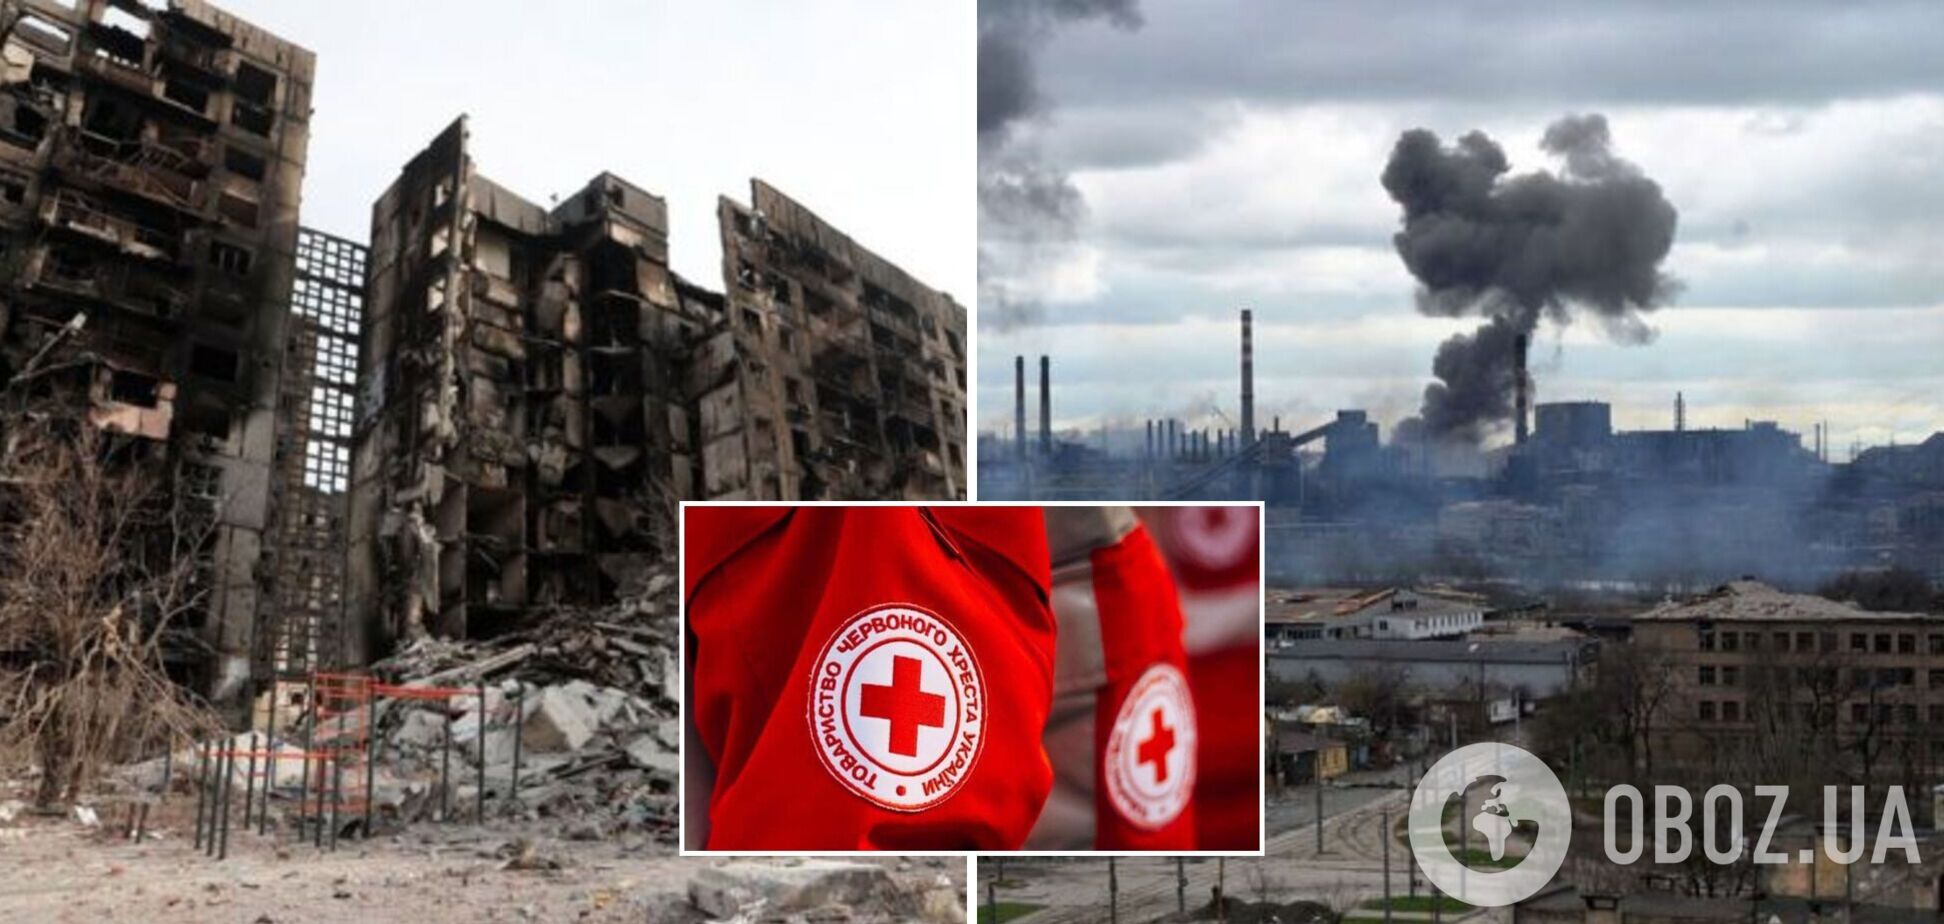 'Красный Крест' призвал немедленно организовать гумкоридор из Мариуполя: каждый час имеет ужасную цену